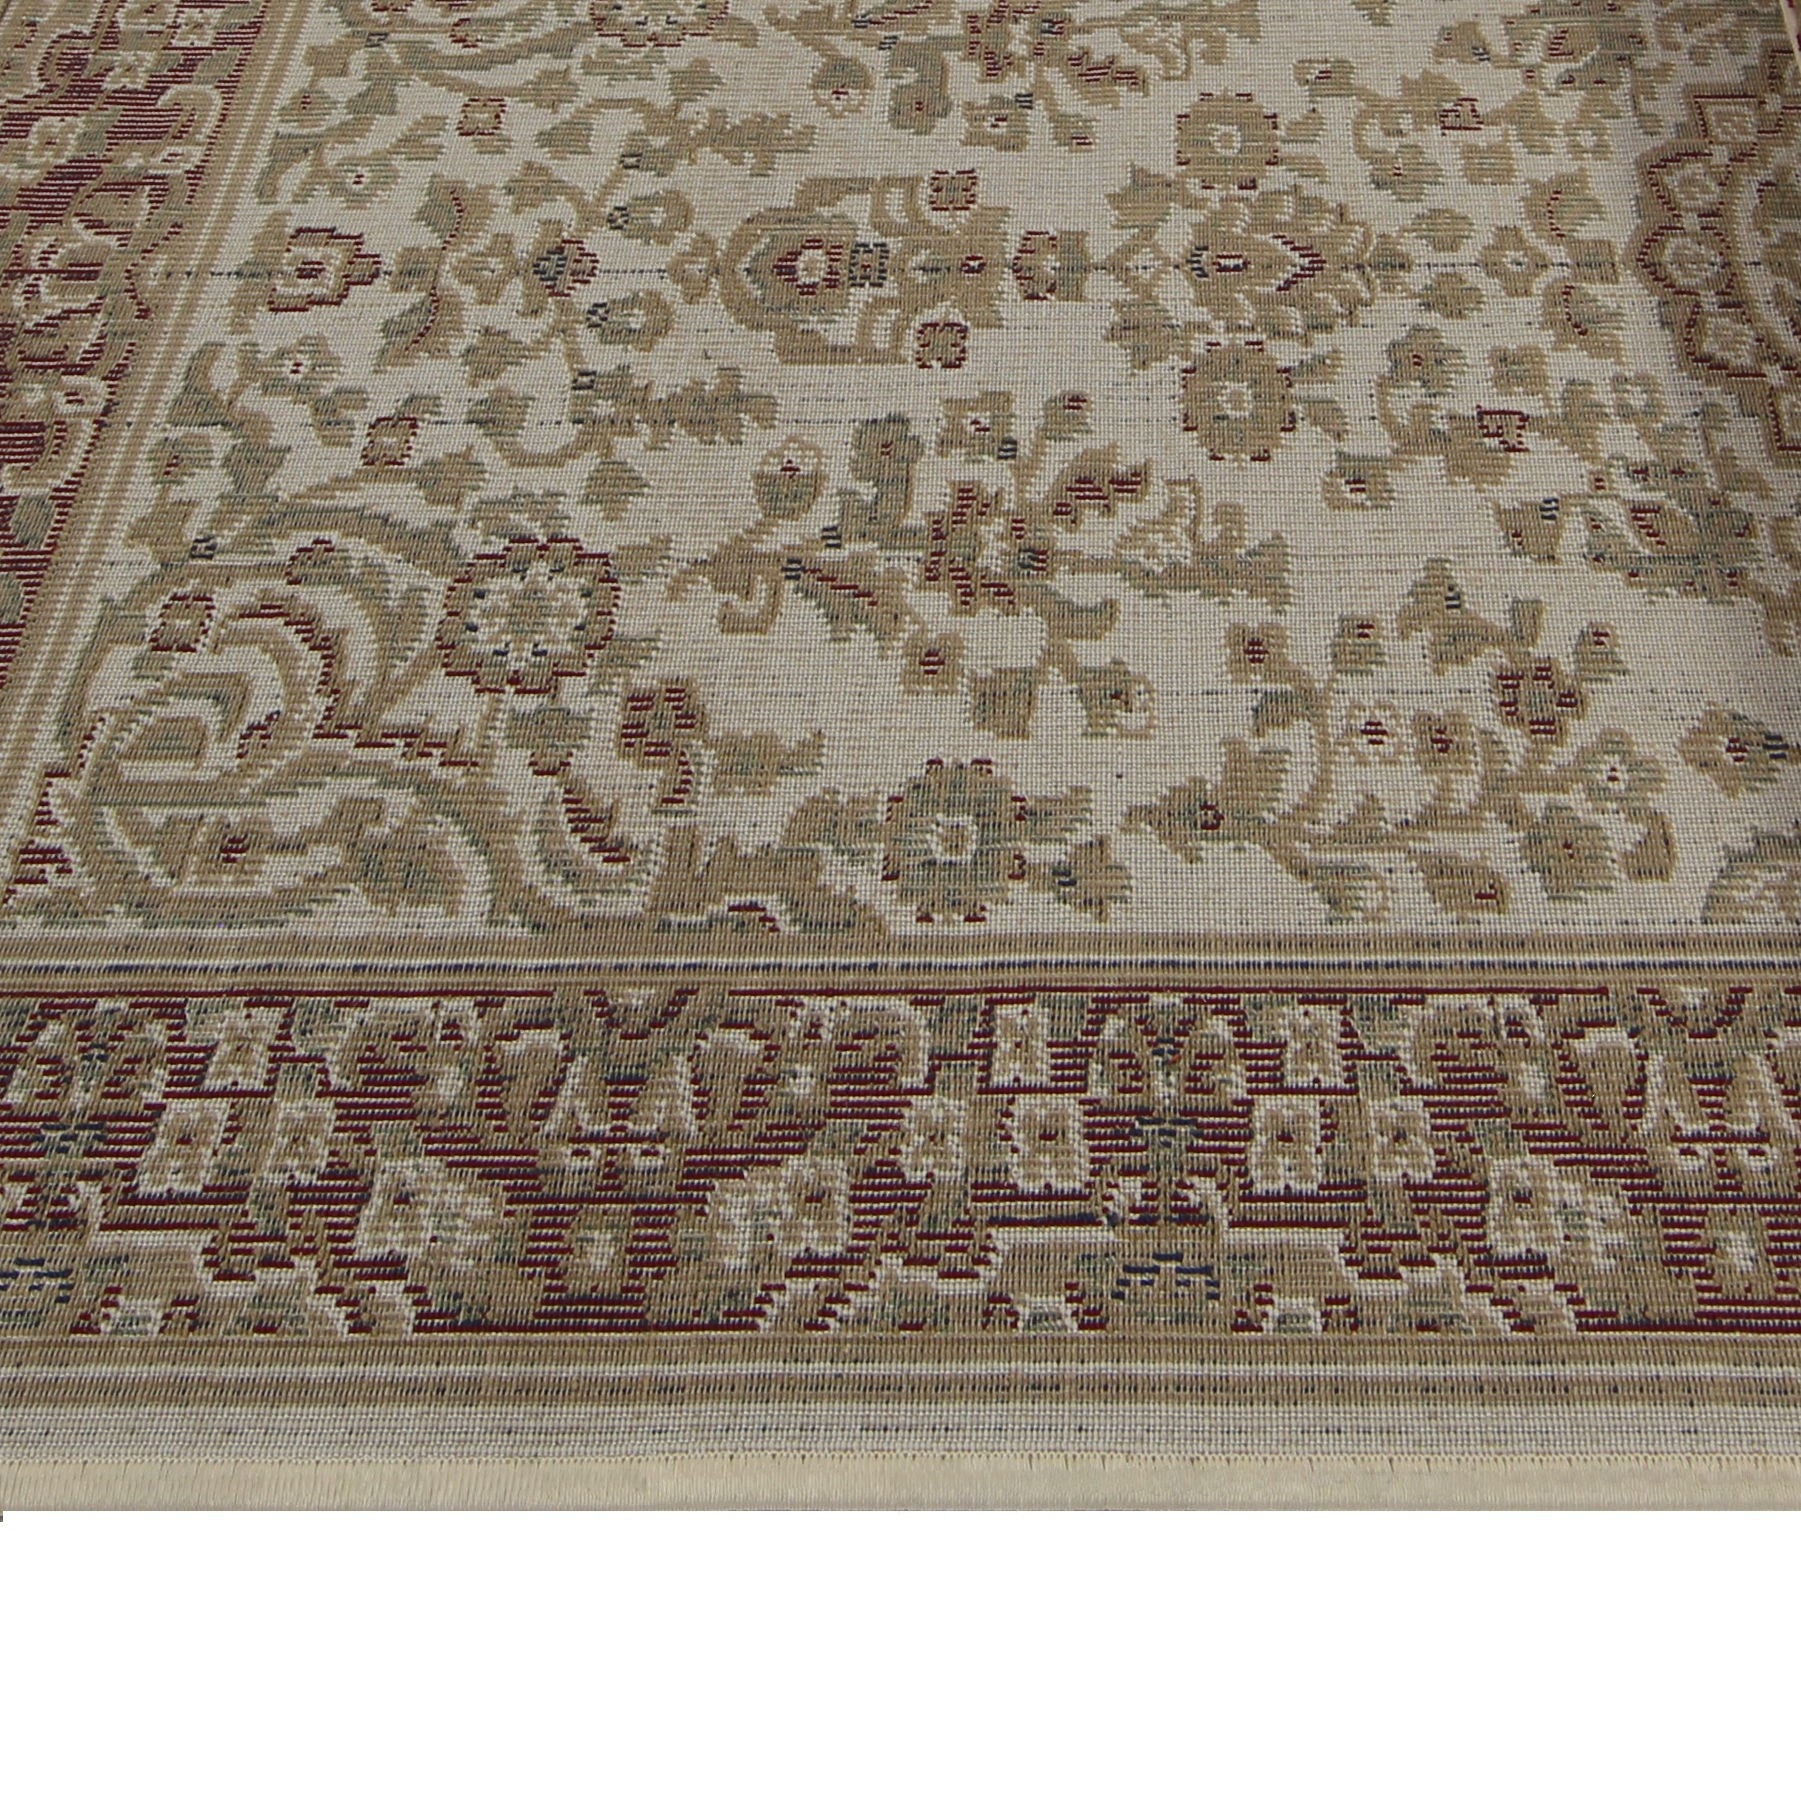 Covor living / dormitor Carpeta Atlas 82271-41333, 60 x 110 cm, polipropilena heat-set, crem, dreptunghiular